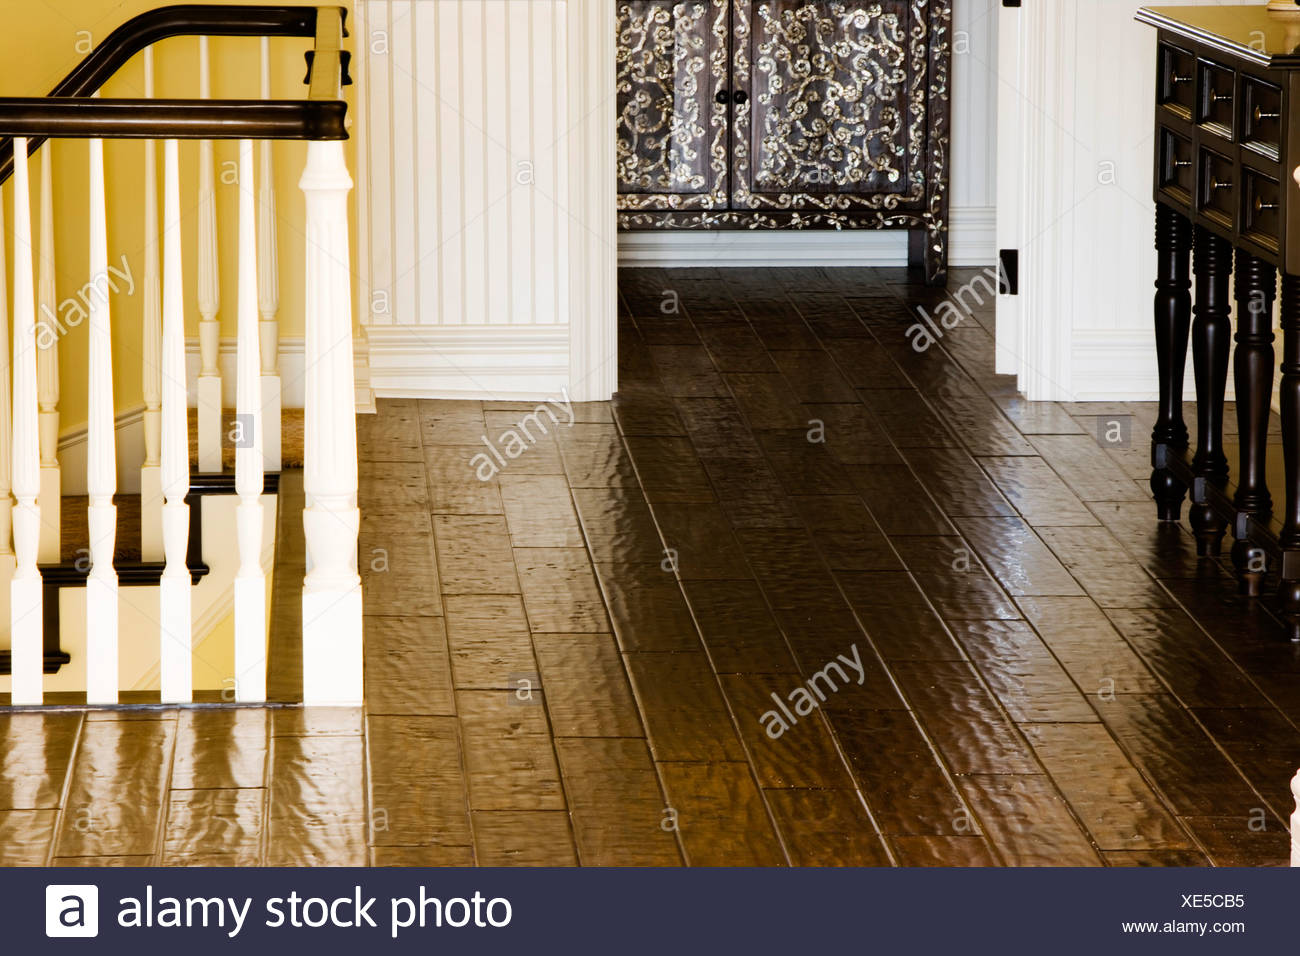 Detail Of Wood Floor And Doorway Stock Photo 284090553 Alamy